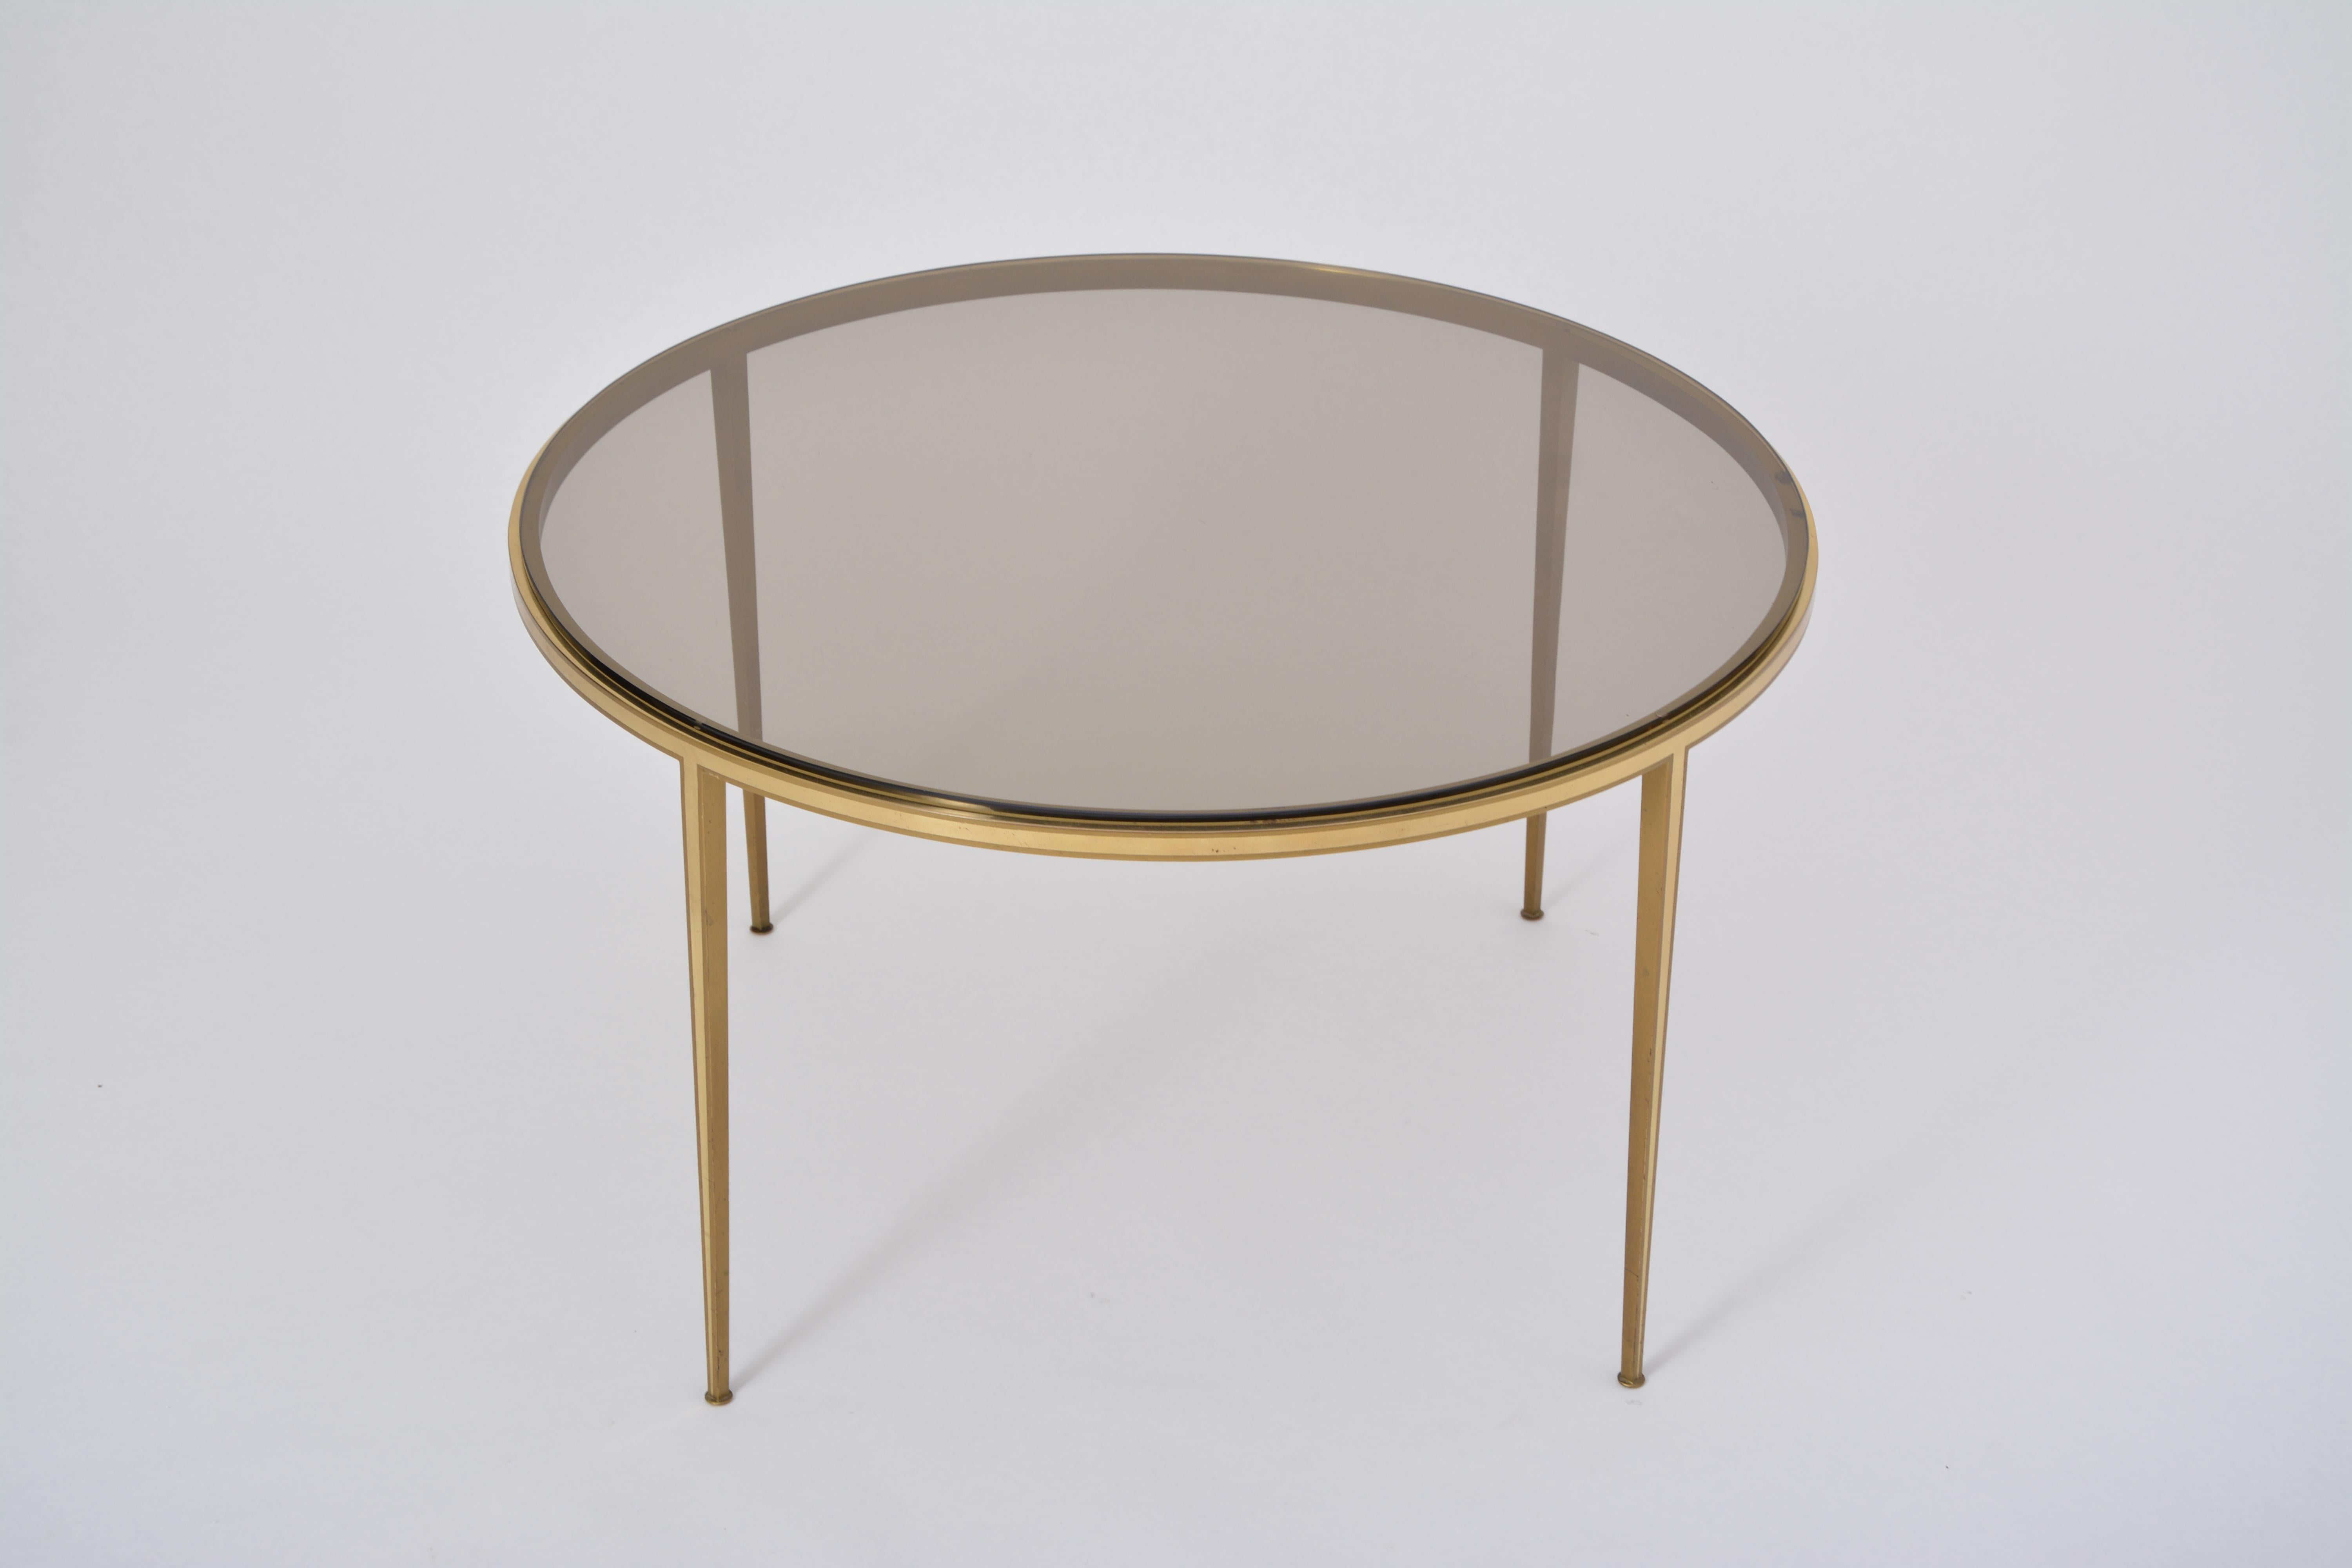 German Golden circular Mid-Century Modern Brass coffee table by Vereinigte Werkstätten For Sale